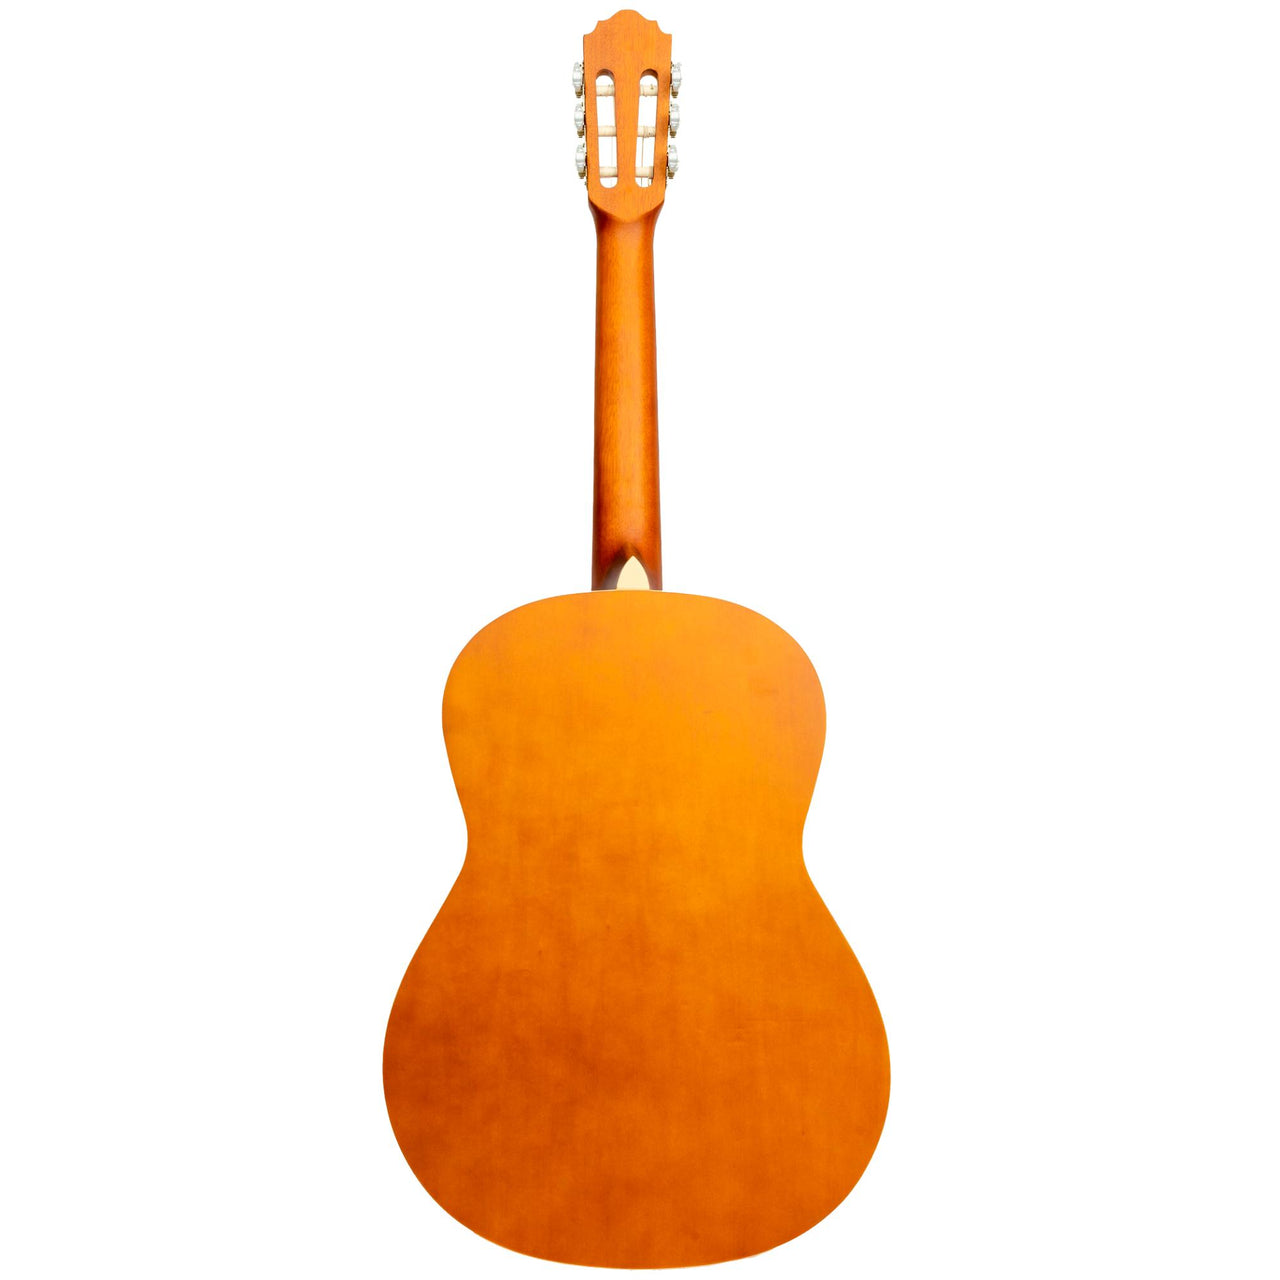 Guitarra Clasica Bamboo Gc-36-caramelle Con Funda